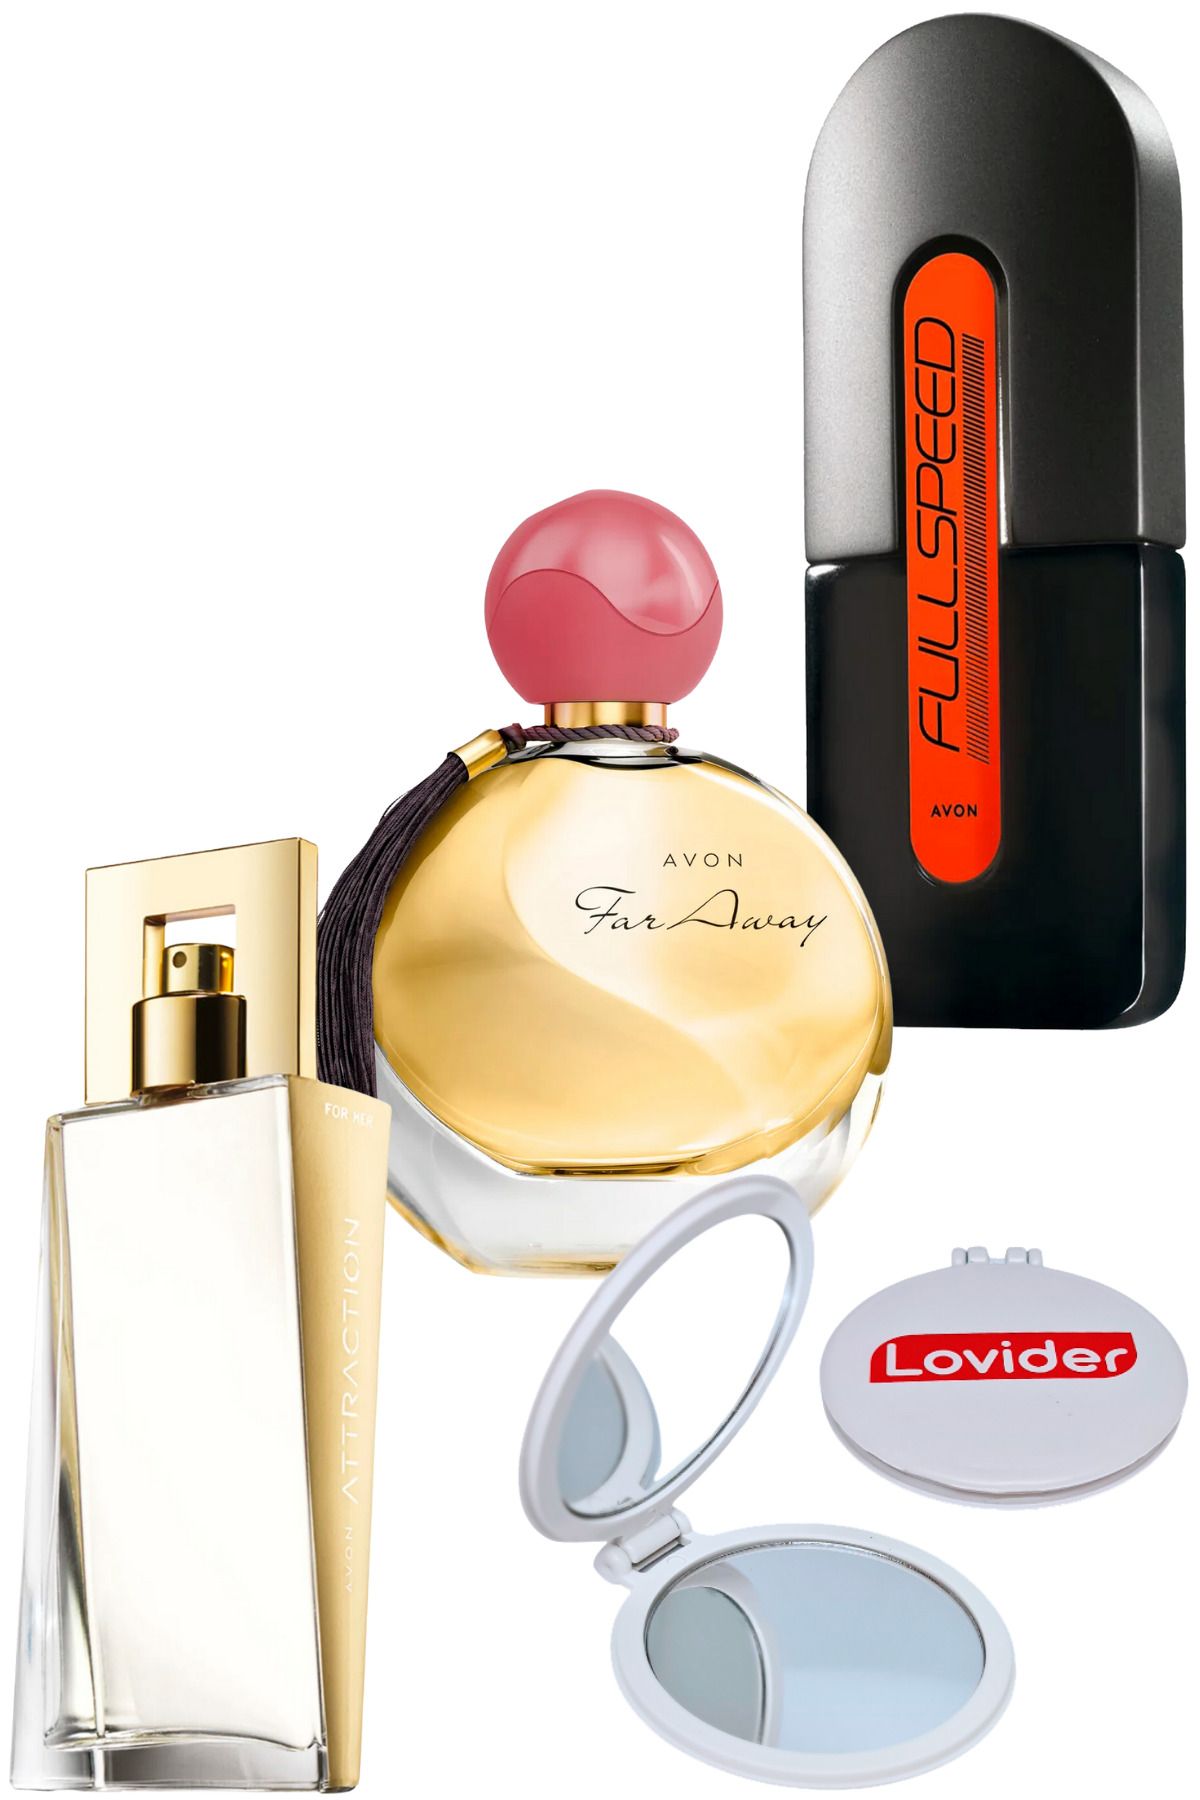 Avon Attraction Kadın + Far Away Kadın + Full Speed Erkek Parfüm + Lovider Cep Aynası